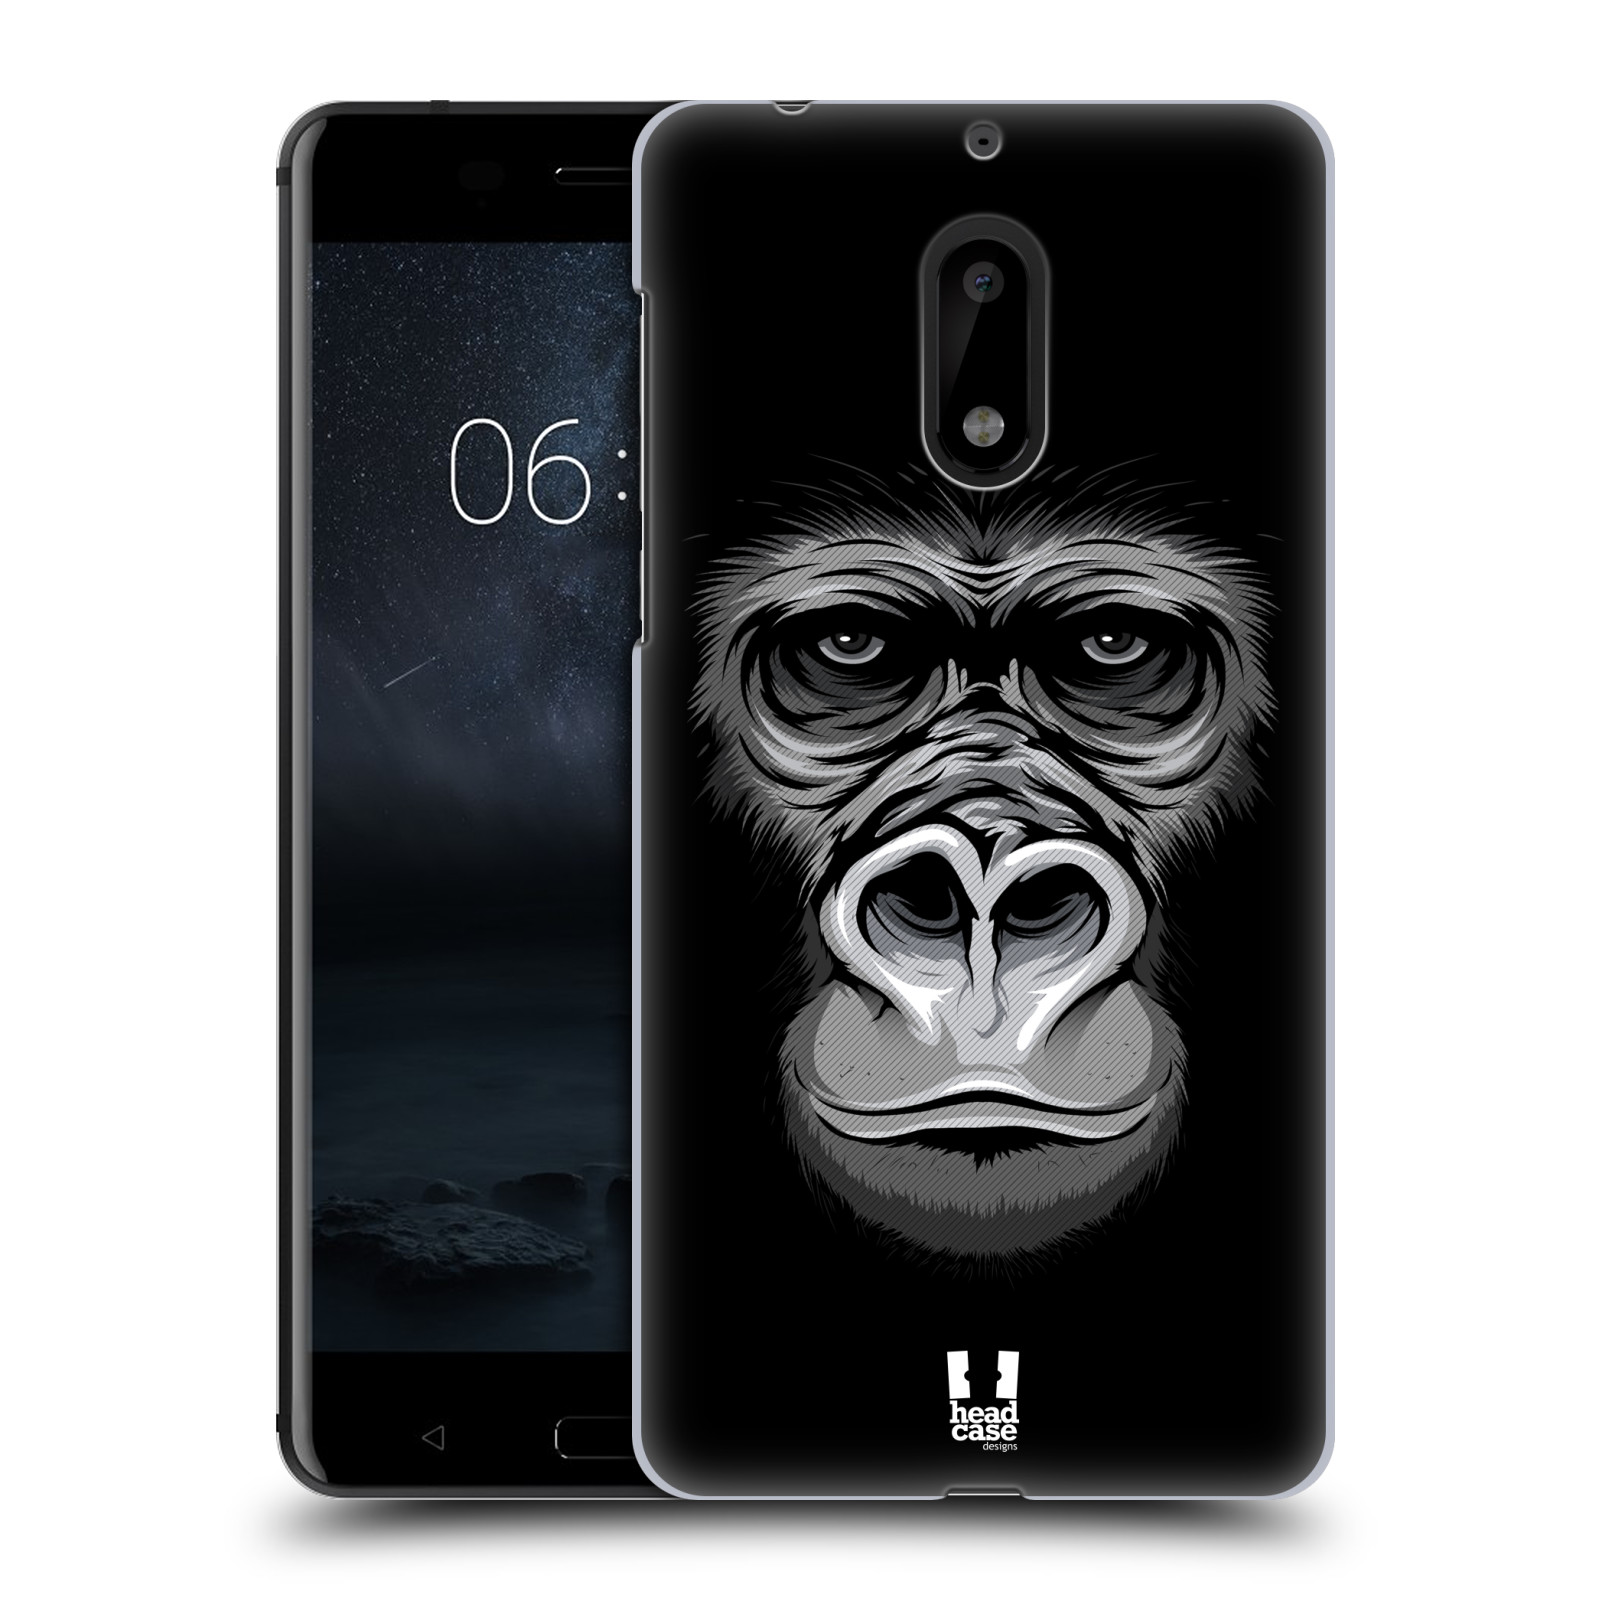 HEAD CASE plastový obal na mobil Nokia 6 vzor Zvíře kreslená tvář 2 gorila